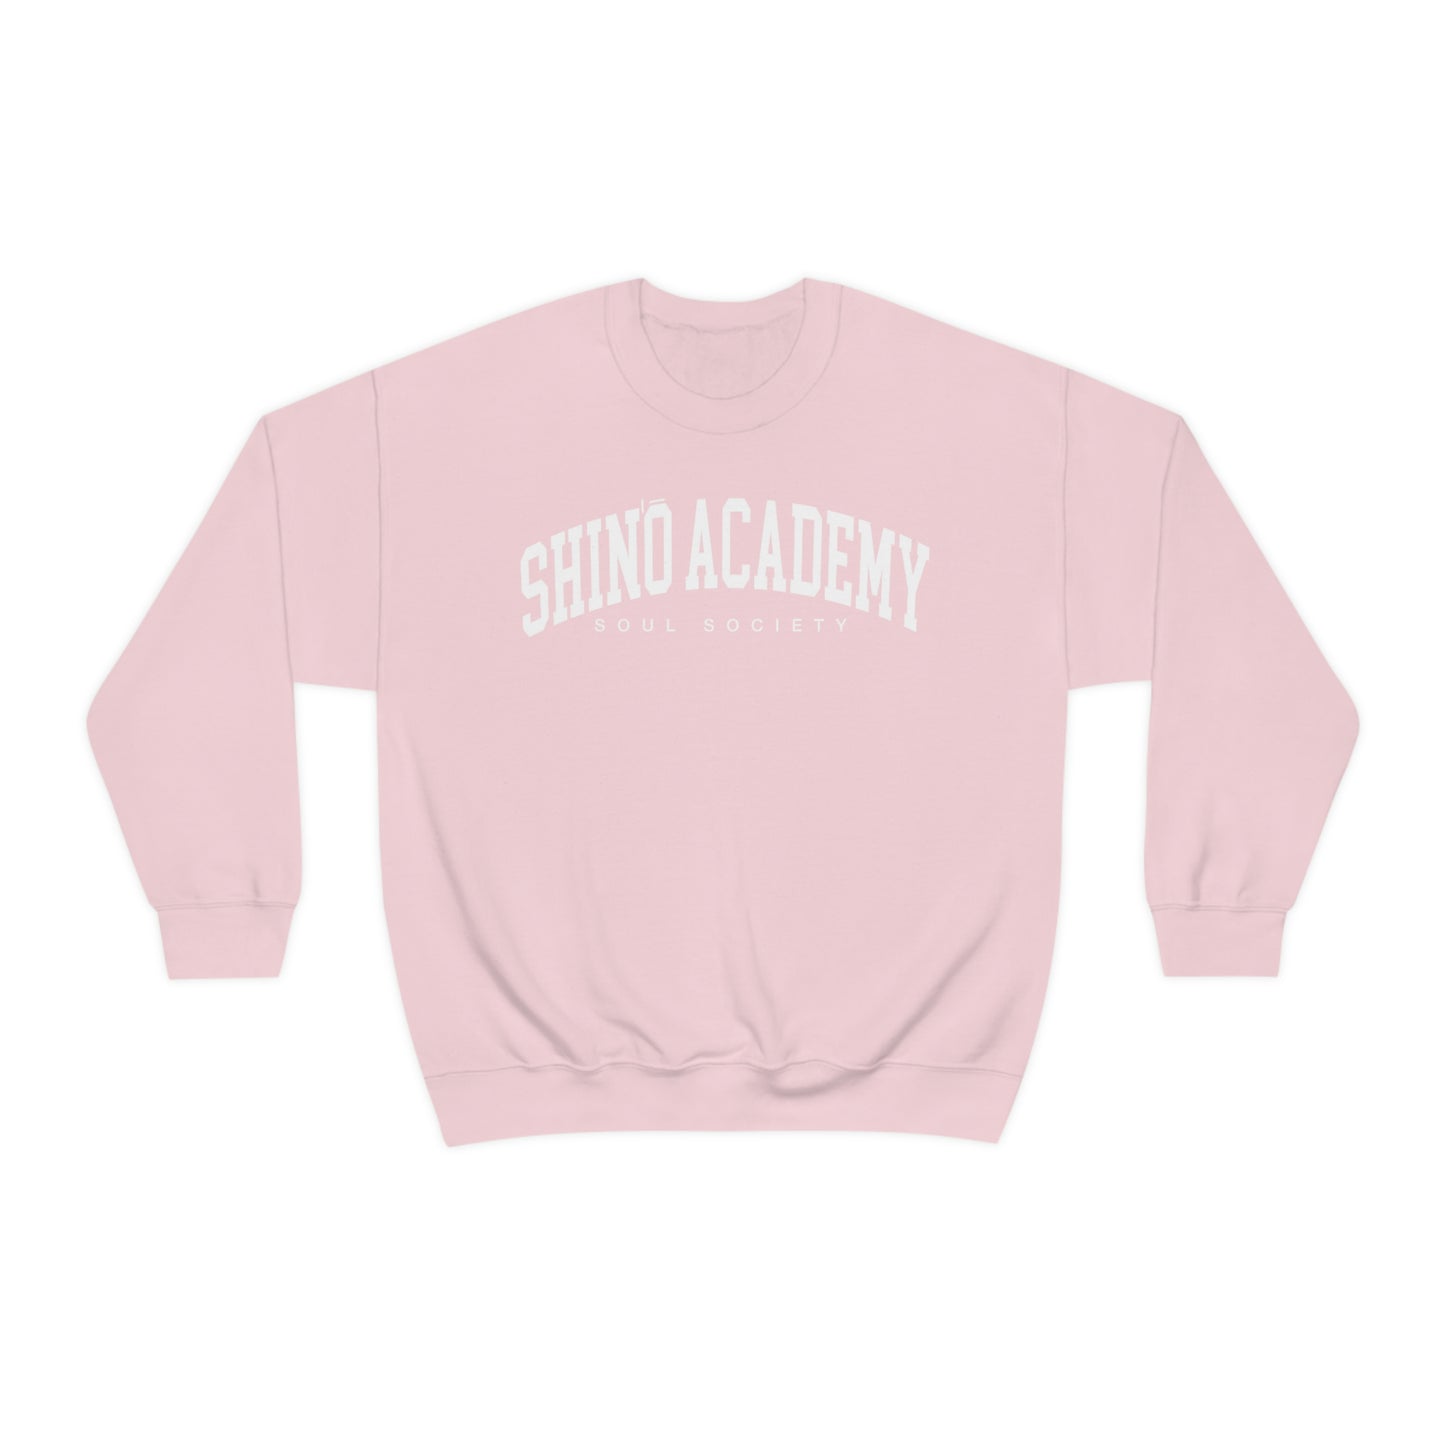 Shino academy sweatshirt crew neck Soul